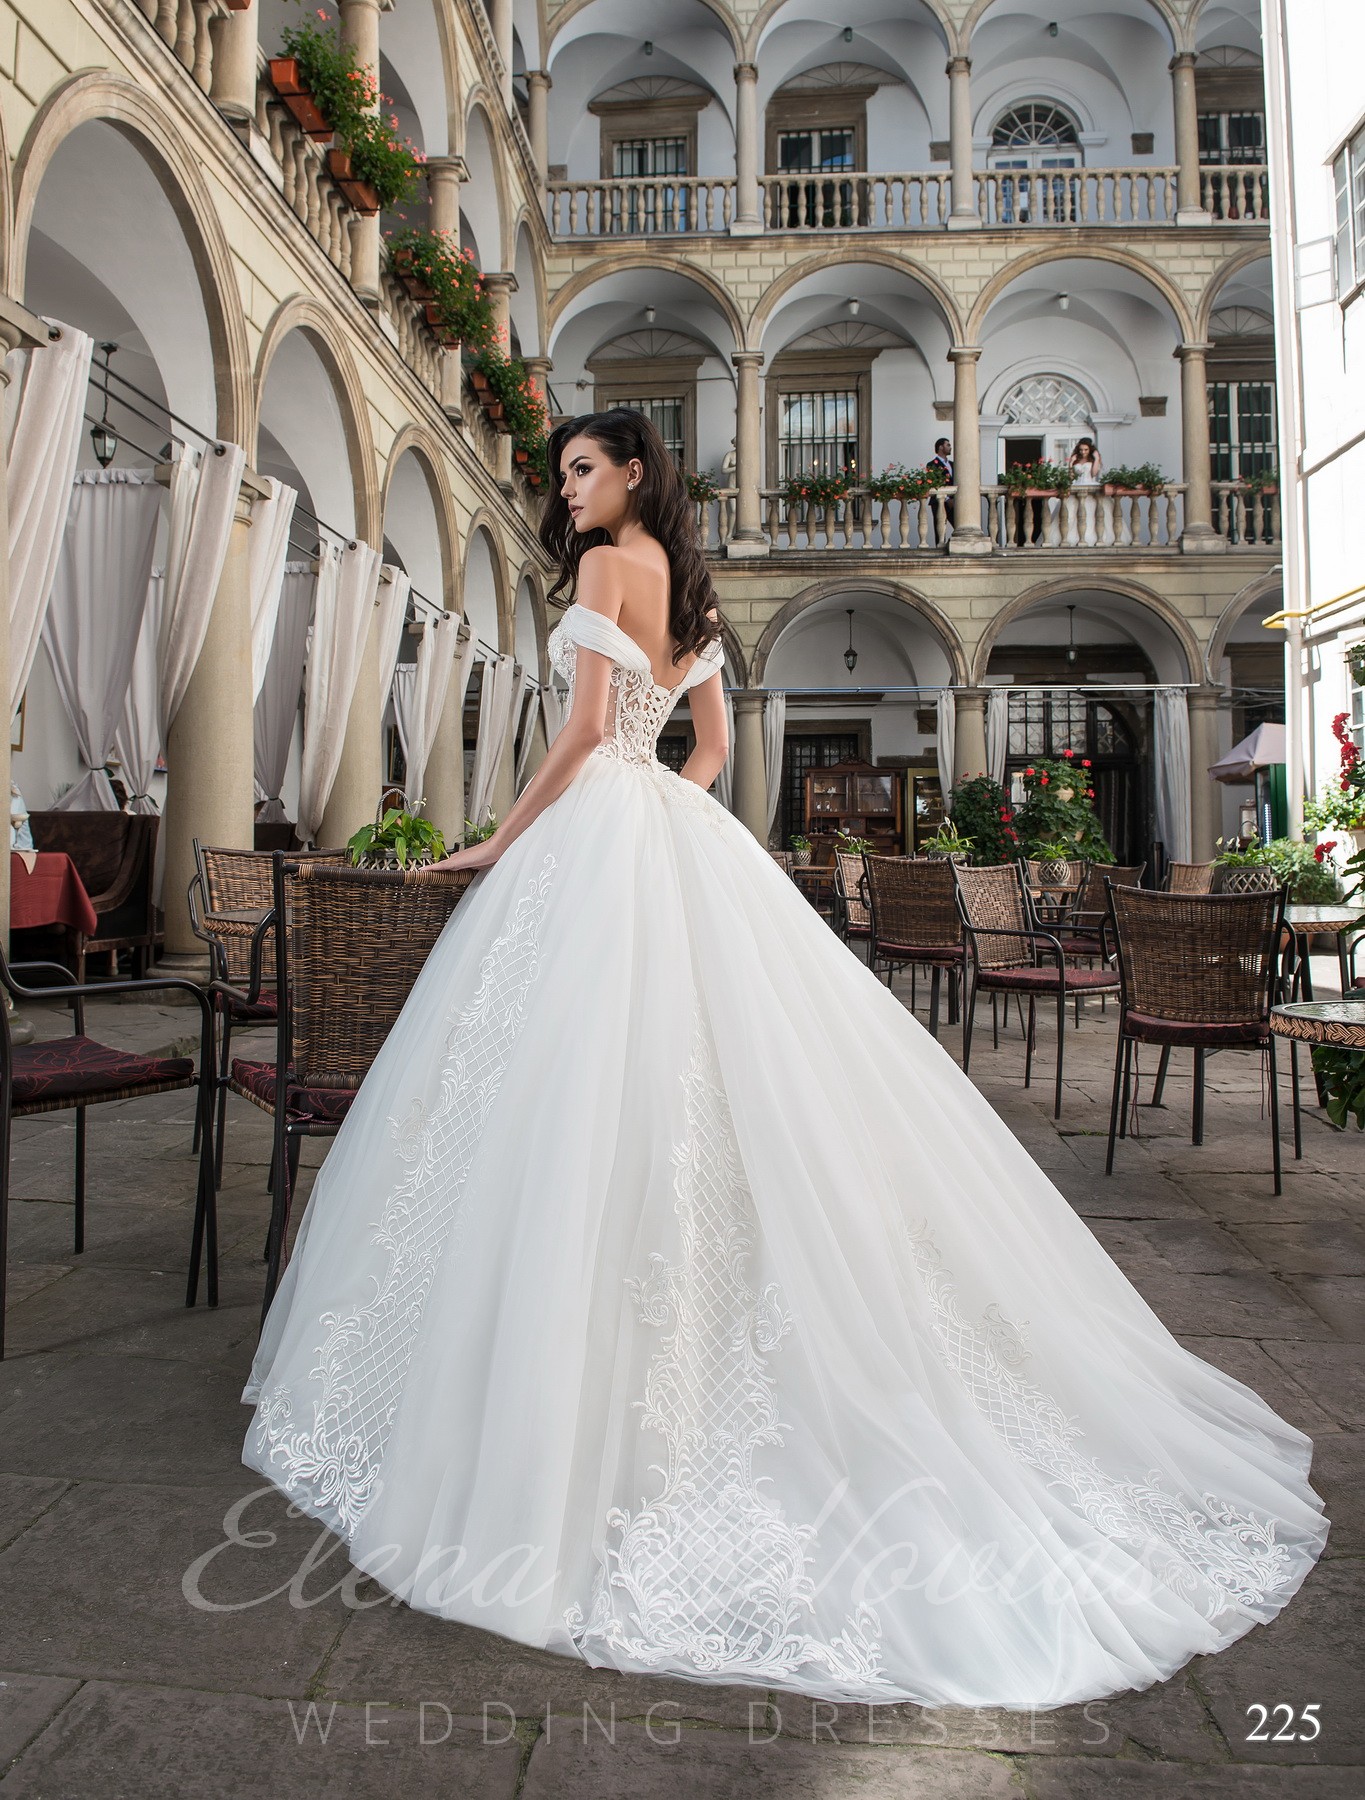 White wedding dress model 225